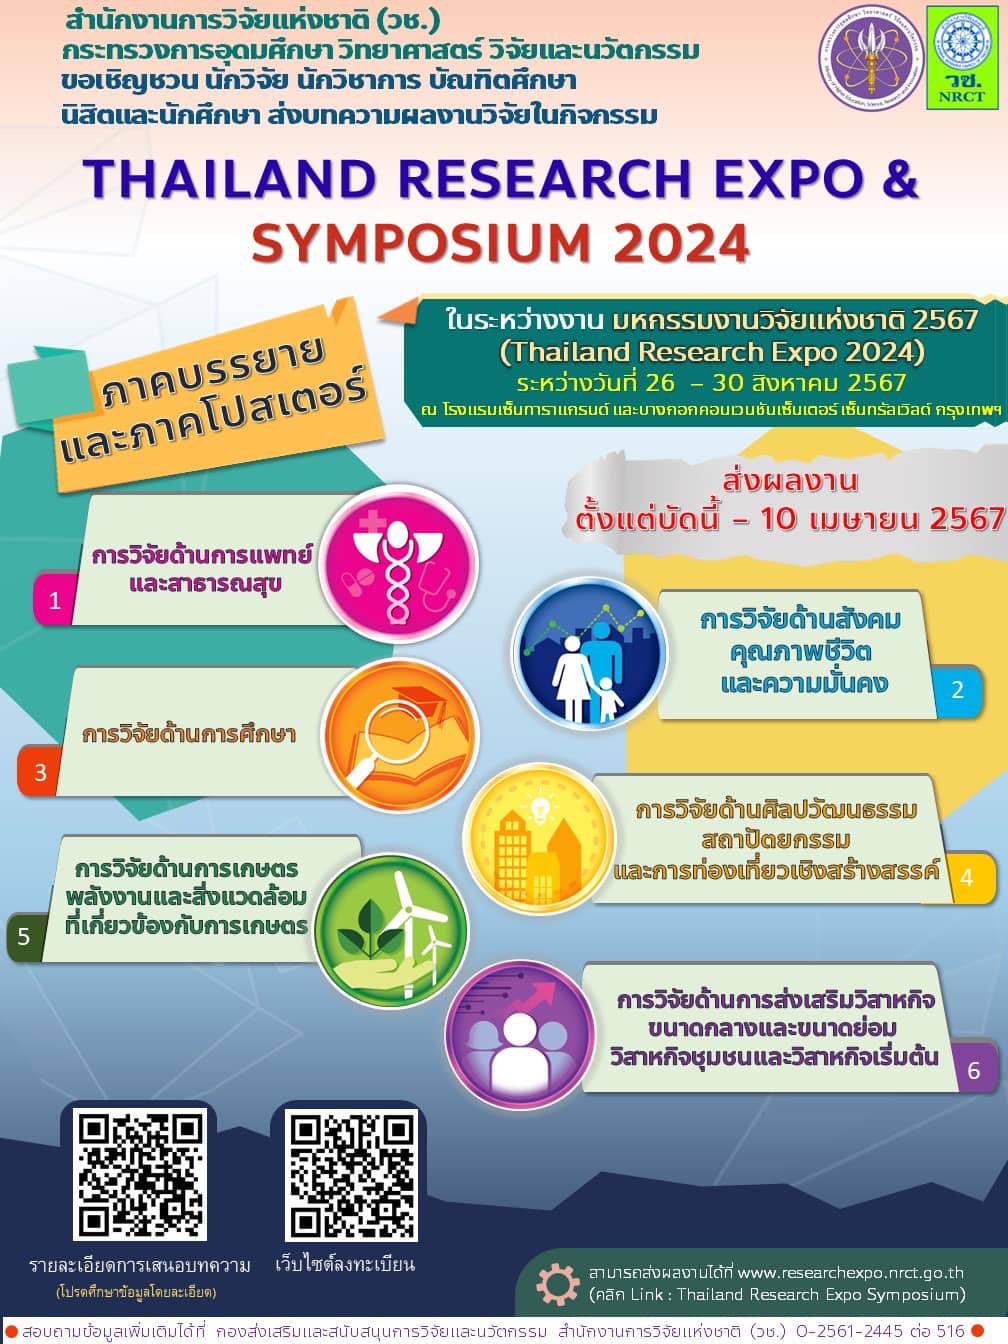 มหกรรมงานวิจัยแห่งชาติ 2567 (Thailand Research Expo 2024)”